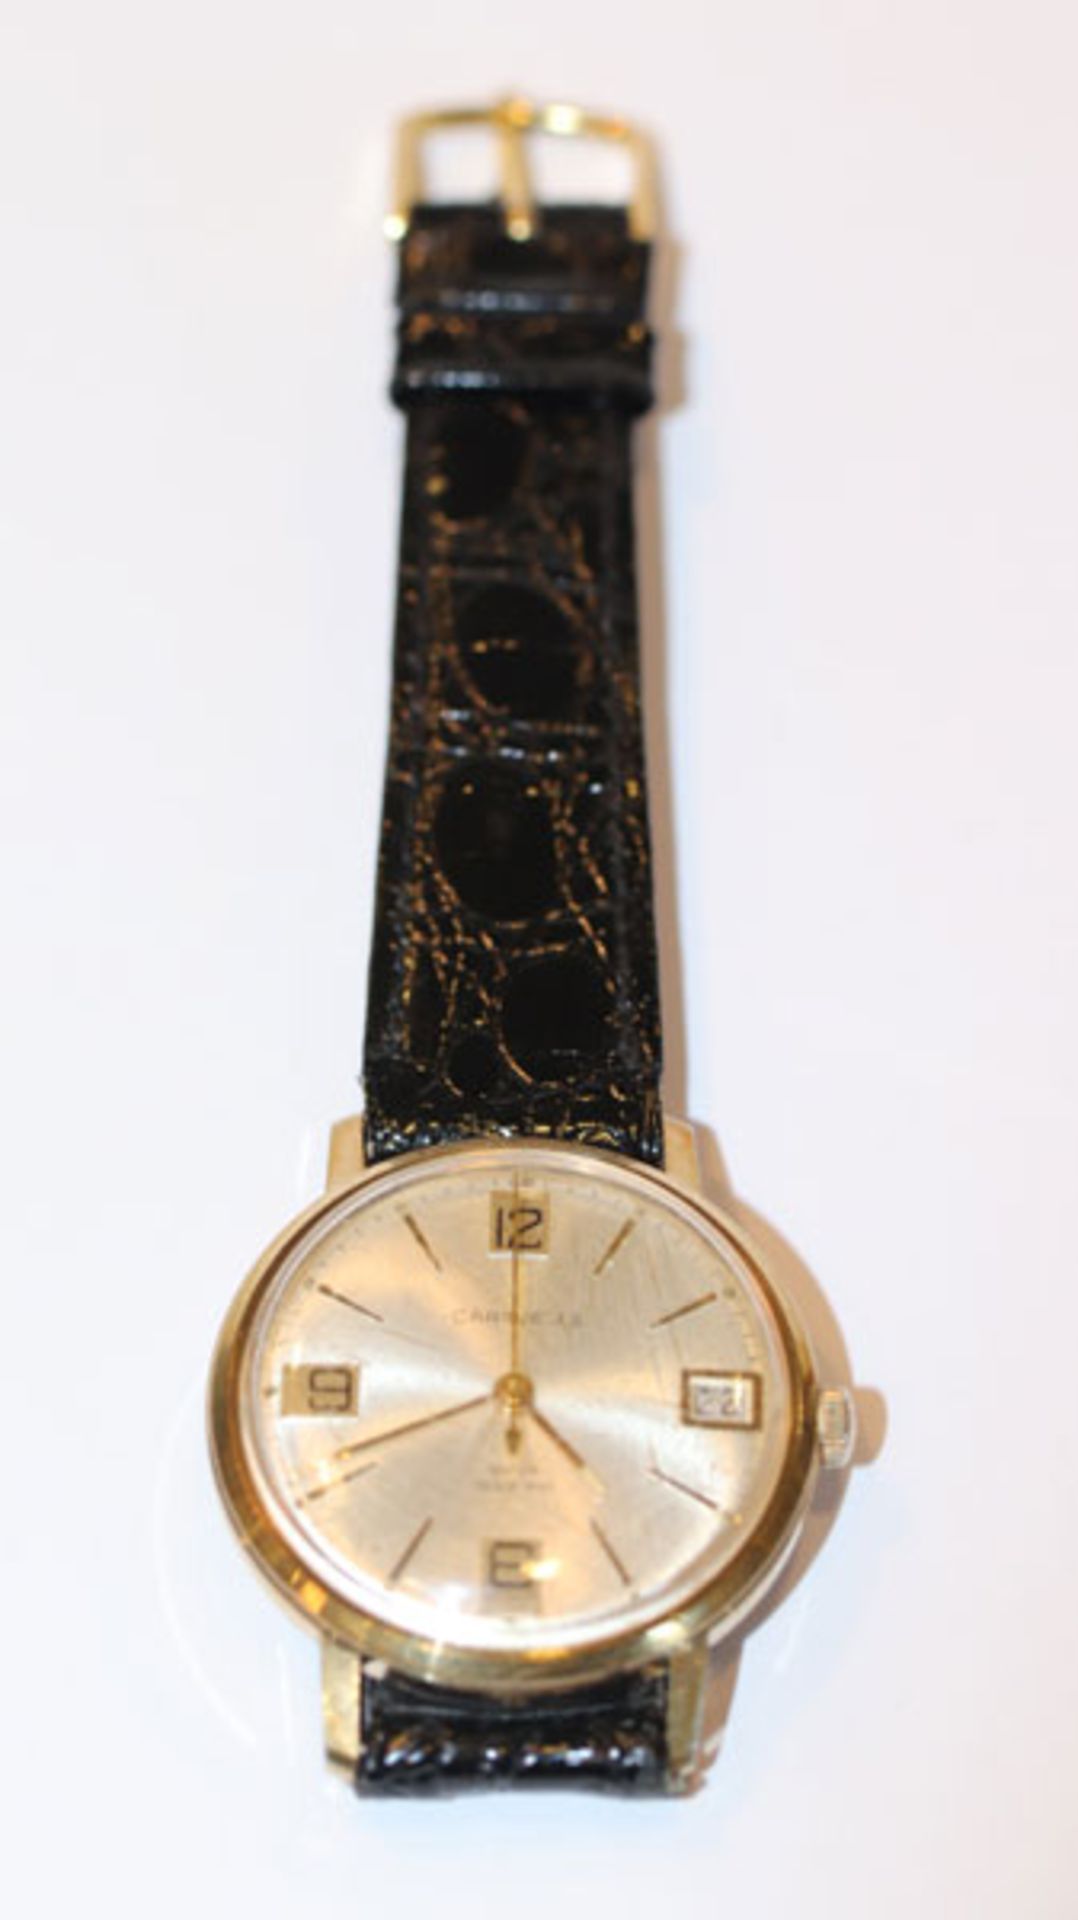 Herren Armbanduhr, Caravelle, um 1960, japanische Uhr mit Datumsanzeige, intakt, an schwarzem